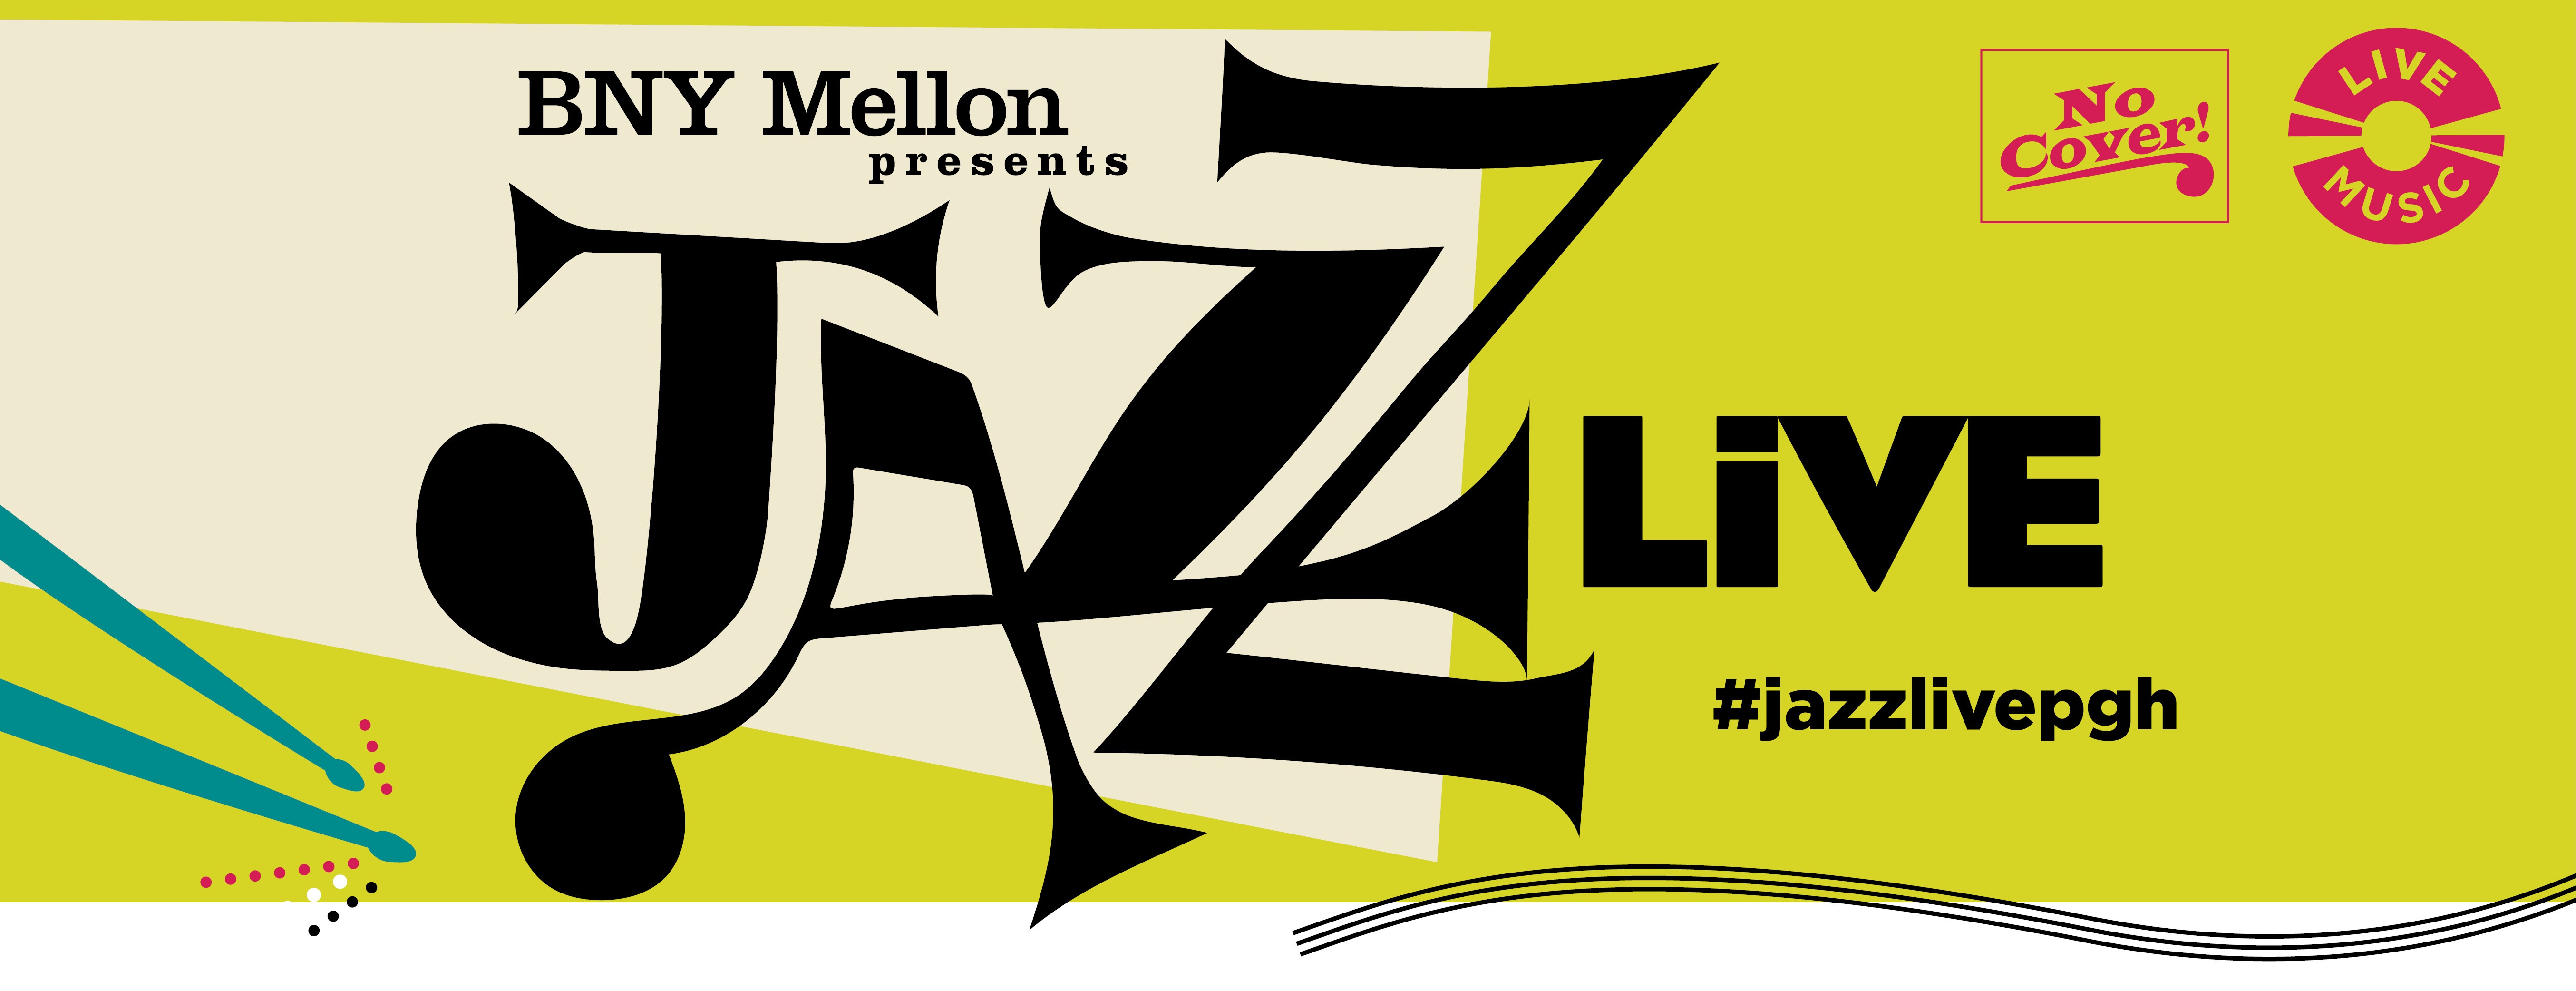 BNY Mellon presents JazzLive